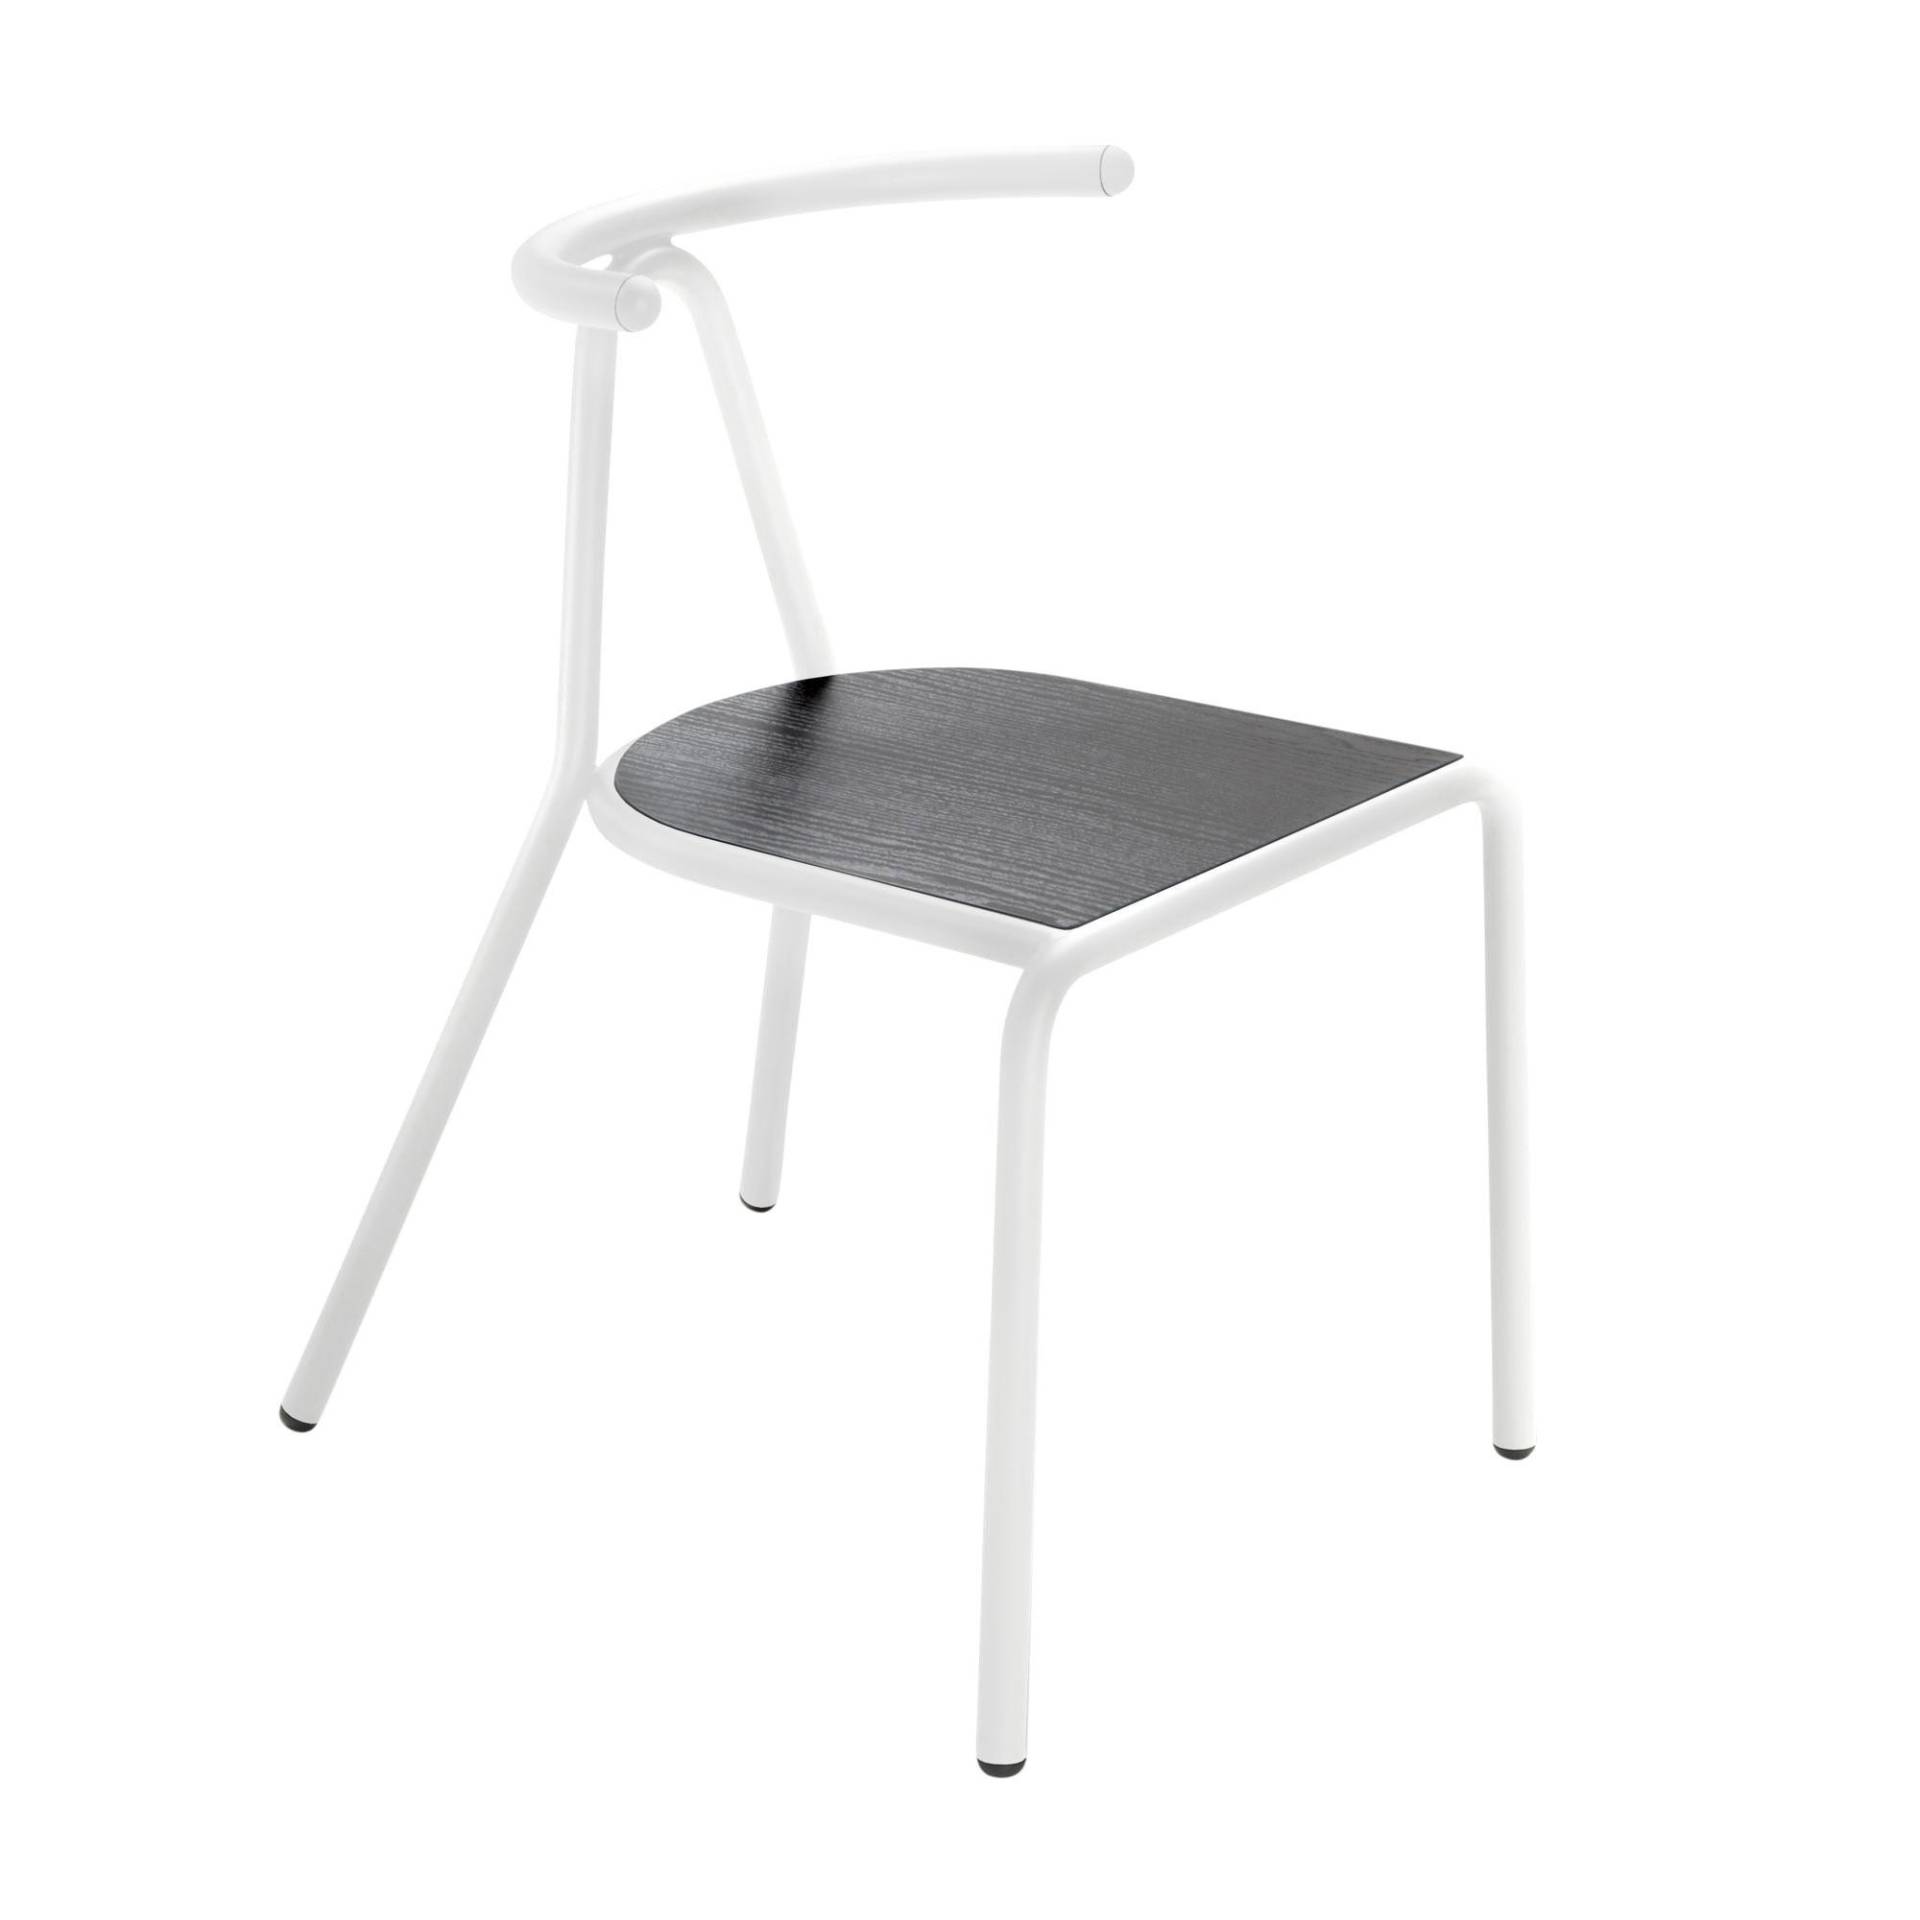 B-Line - Toro Stuhl Sitzfläche Esche - Esche schwarz/mit schwarzem Anstrich/Gestell weiß/BxHxT 55x73,5x54cm von B-Line